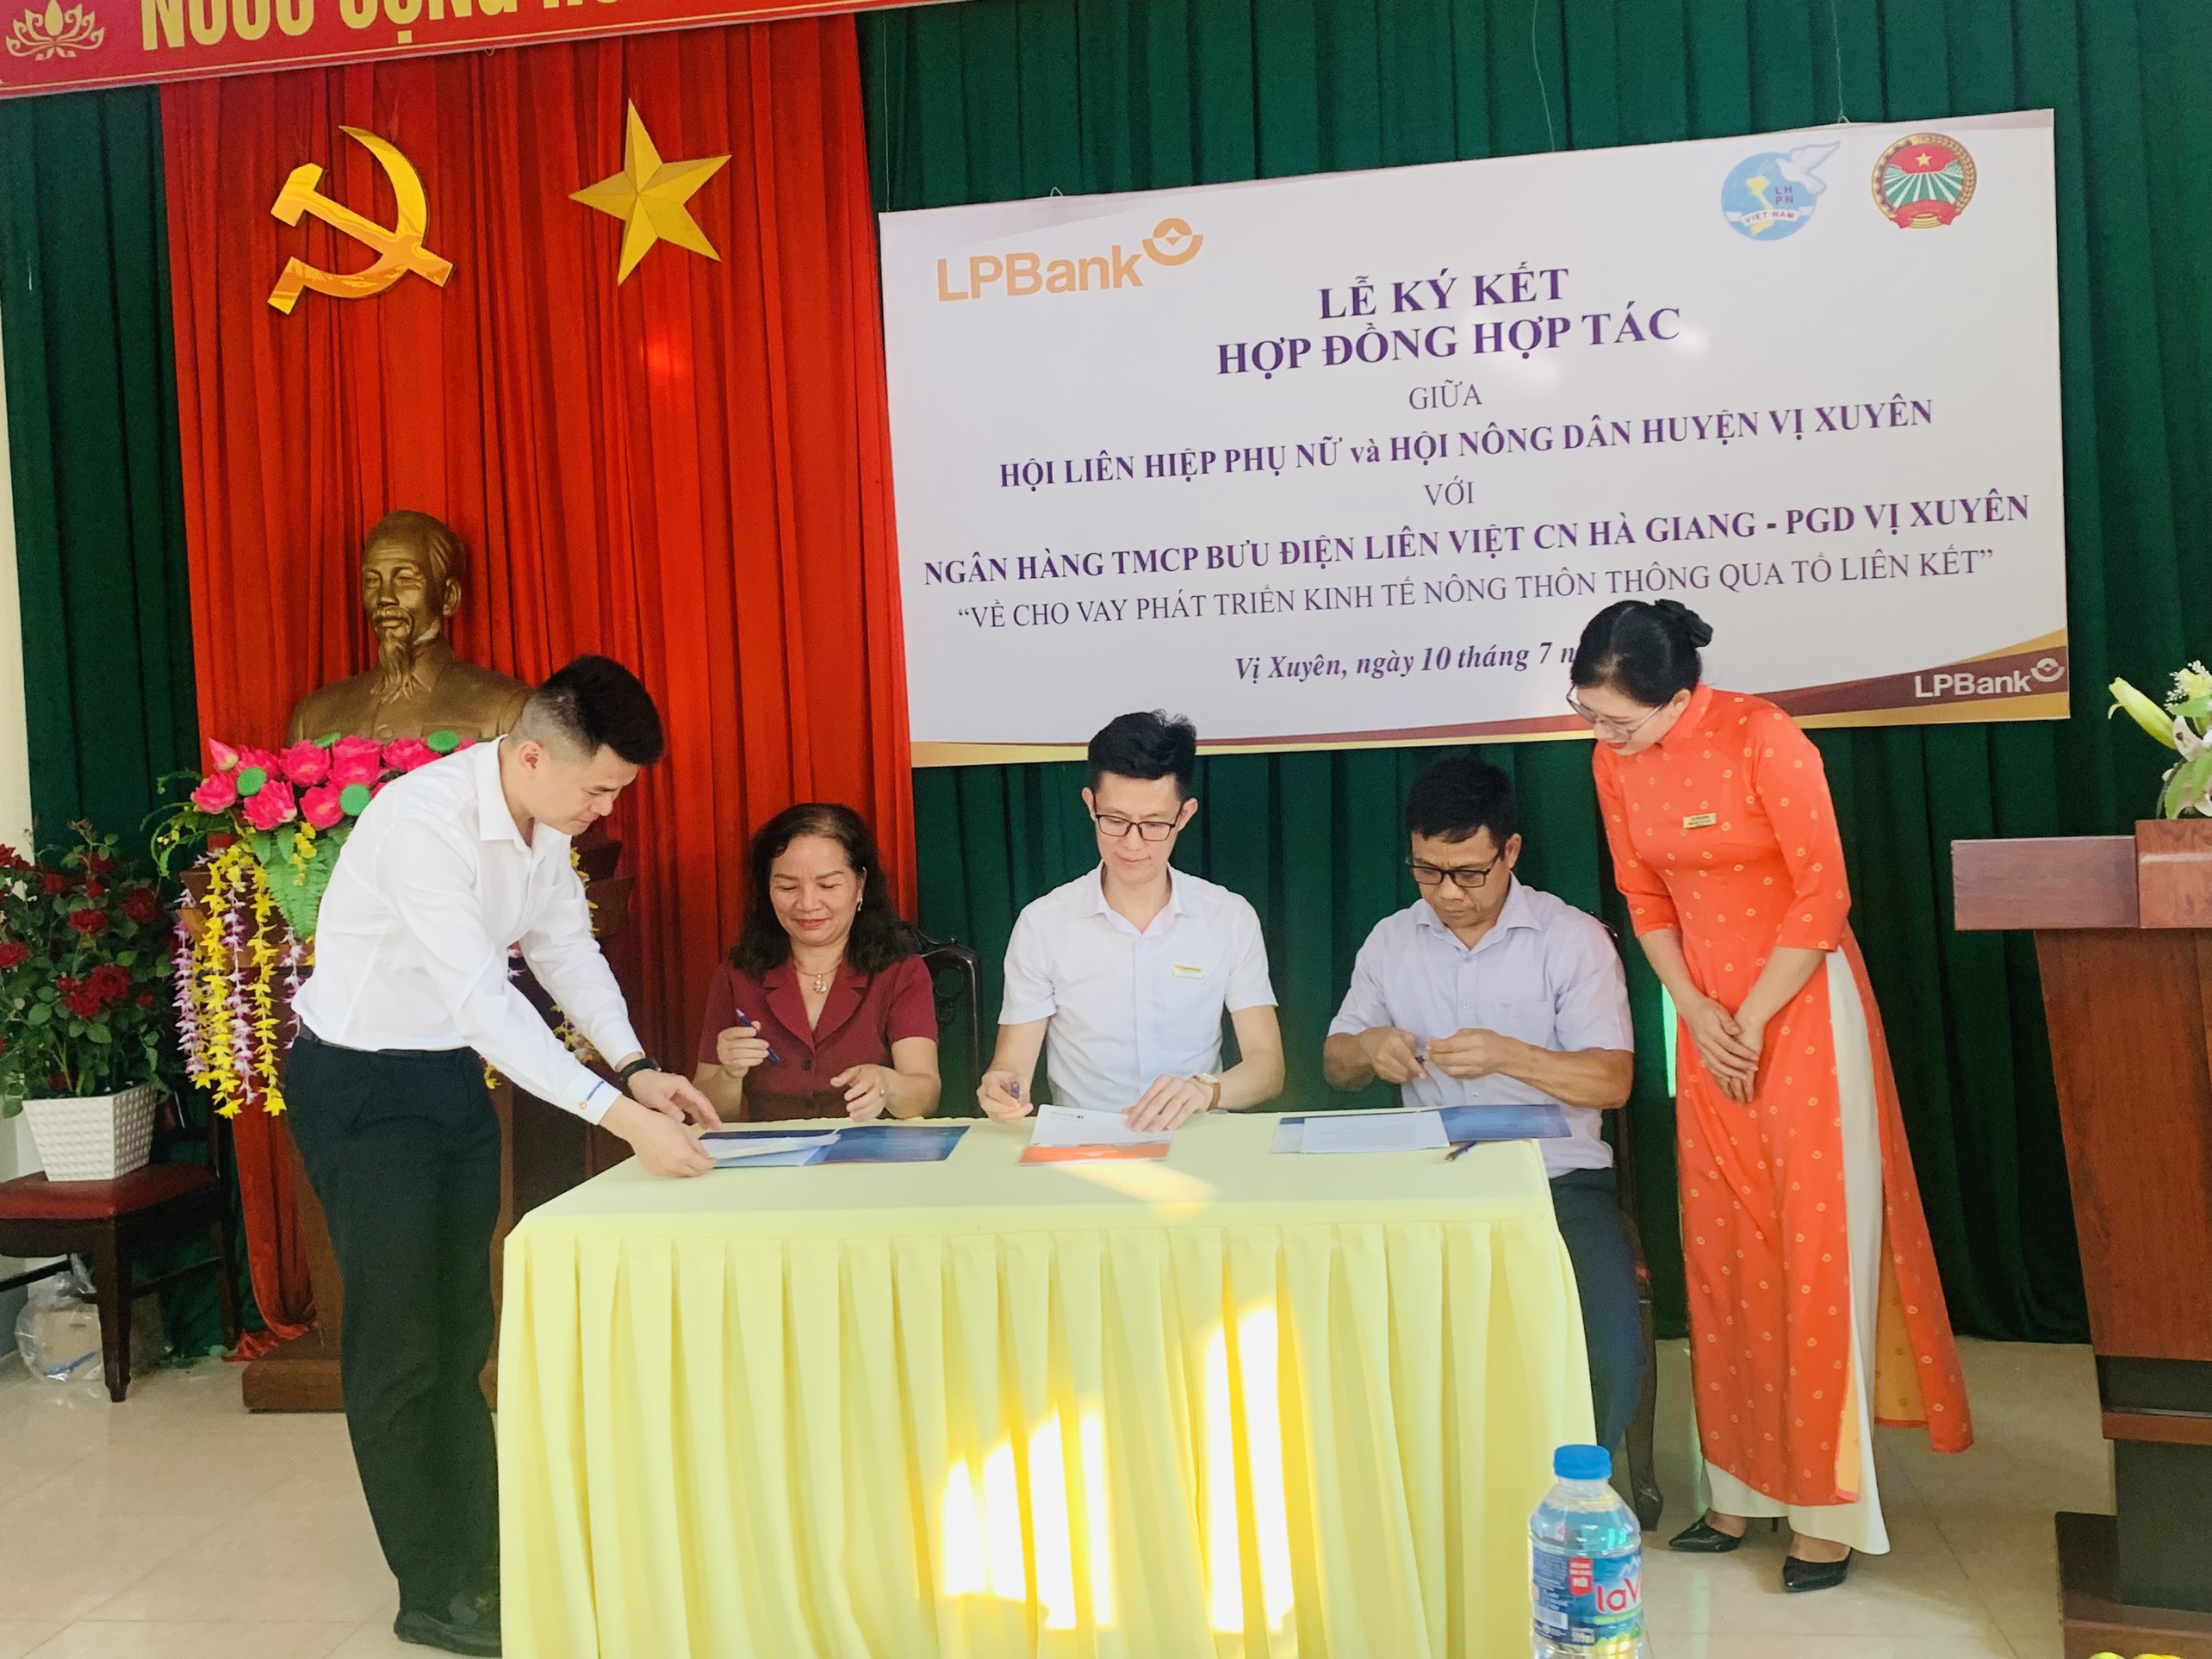 Ngân hàng bưu điện Liên Việt CN Hà Giang - PGD Vị Xuyên ký kết hợp đồng hợp tác giữa Hội LHPN huyện và Hội Nông dân Vị Xuyên